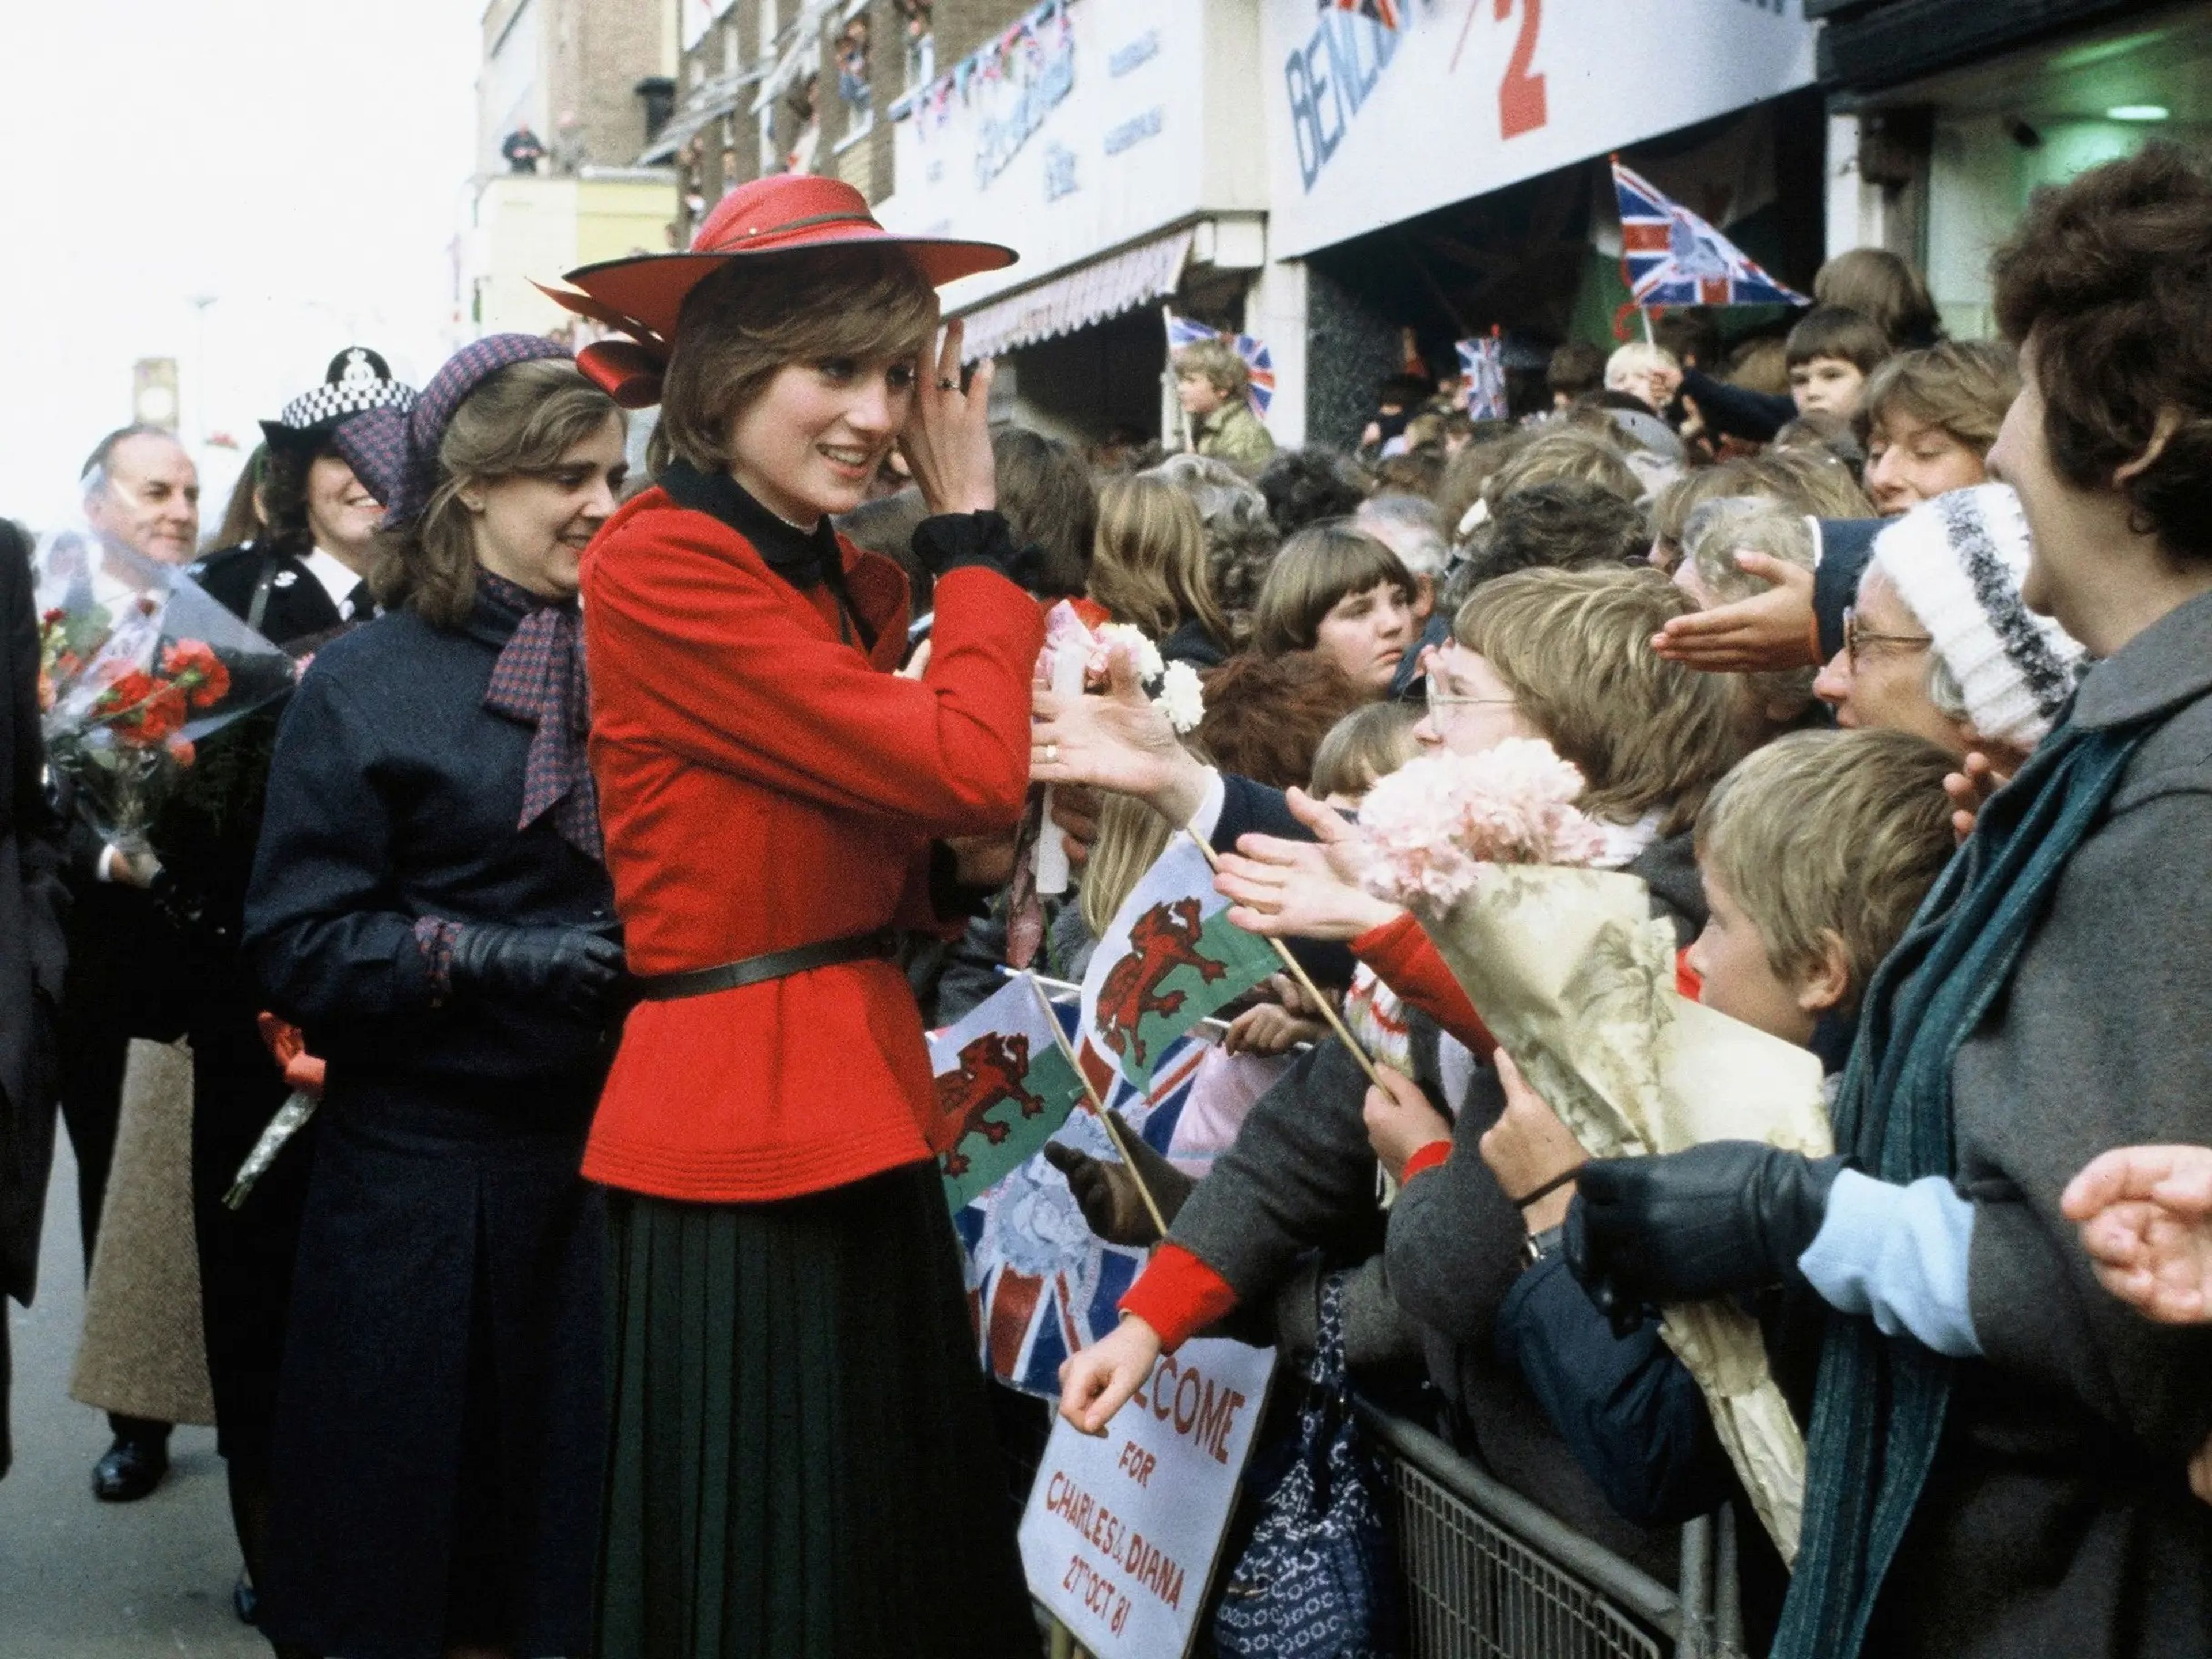 La princesa diana en octubre de 1981 llevando un traje de Donald Campbell y un sombrero de John Boyd. / Anwar Hussein/Getty Images.